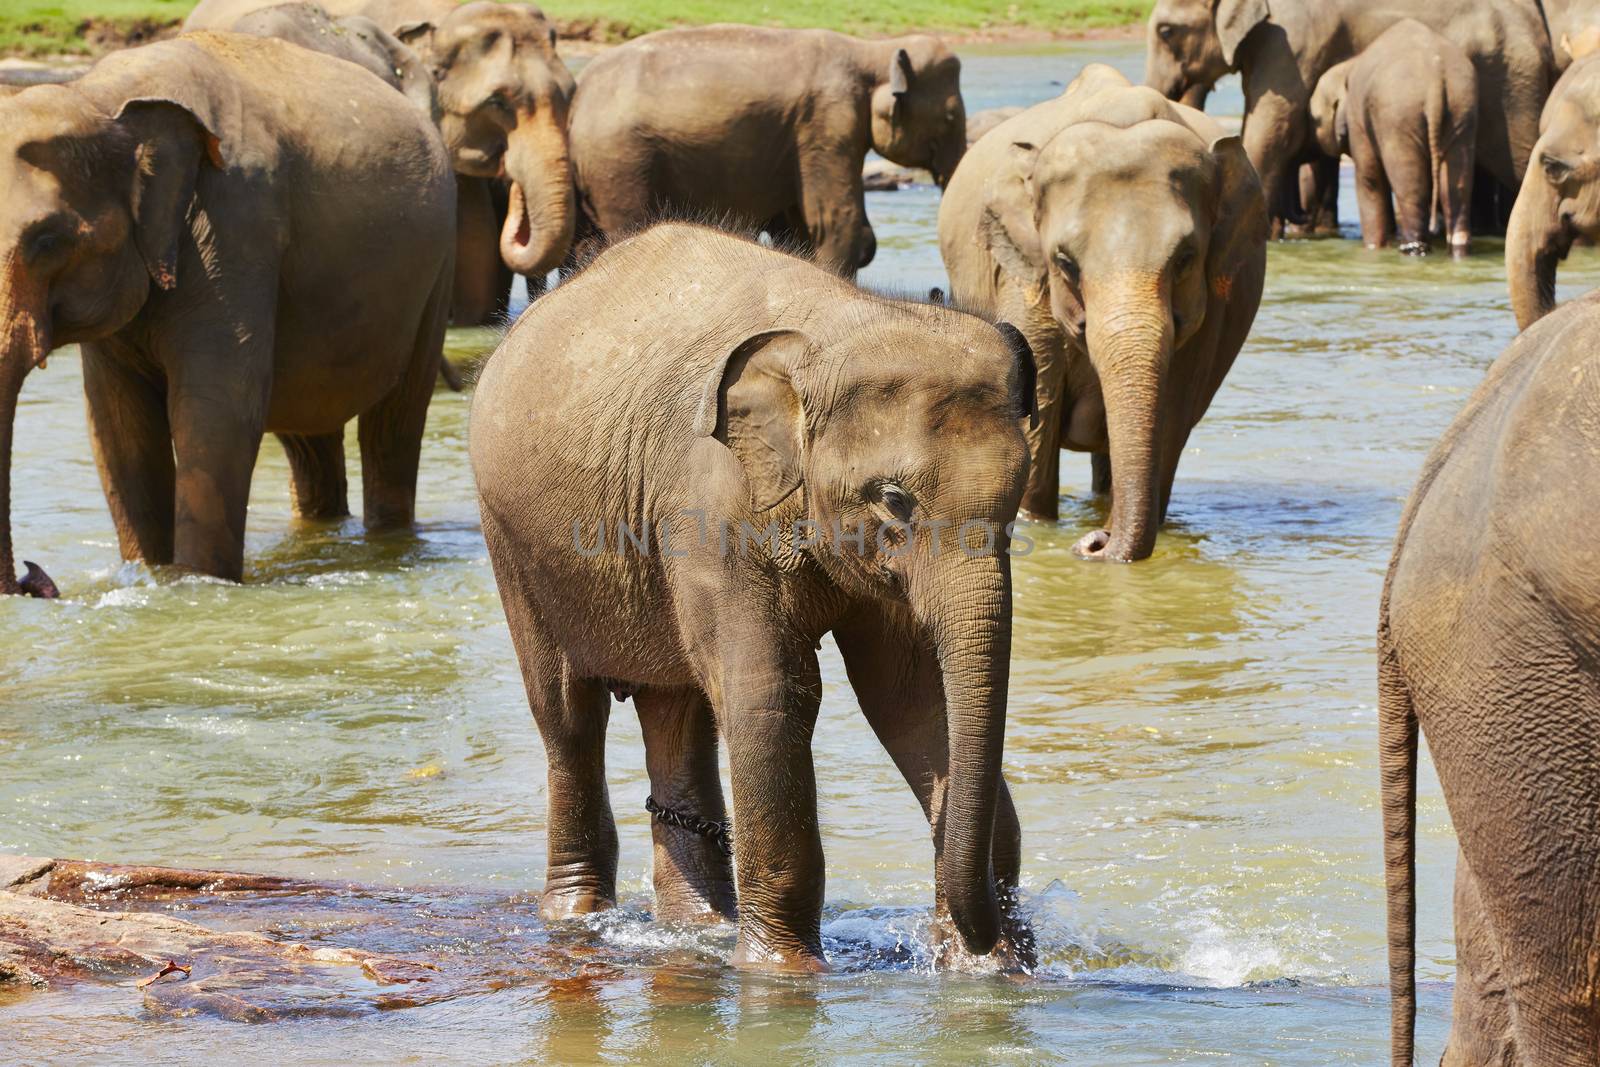 Elephants are walking in the river in Sri Lanka. 